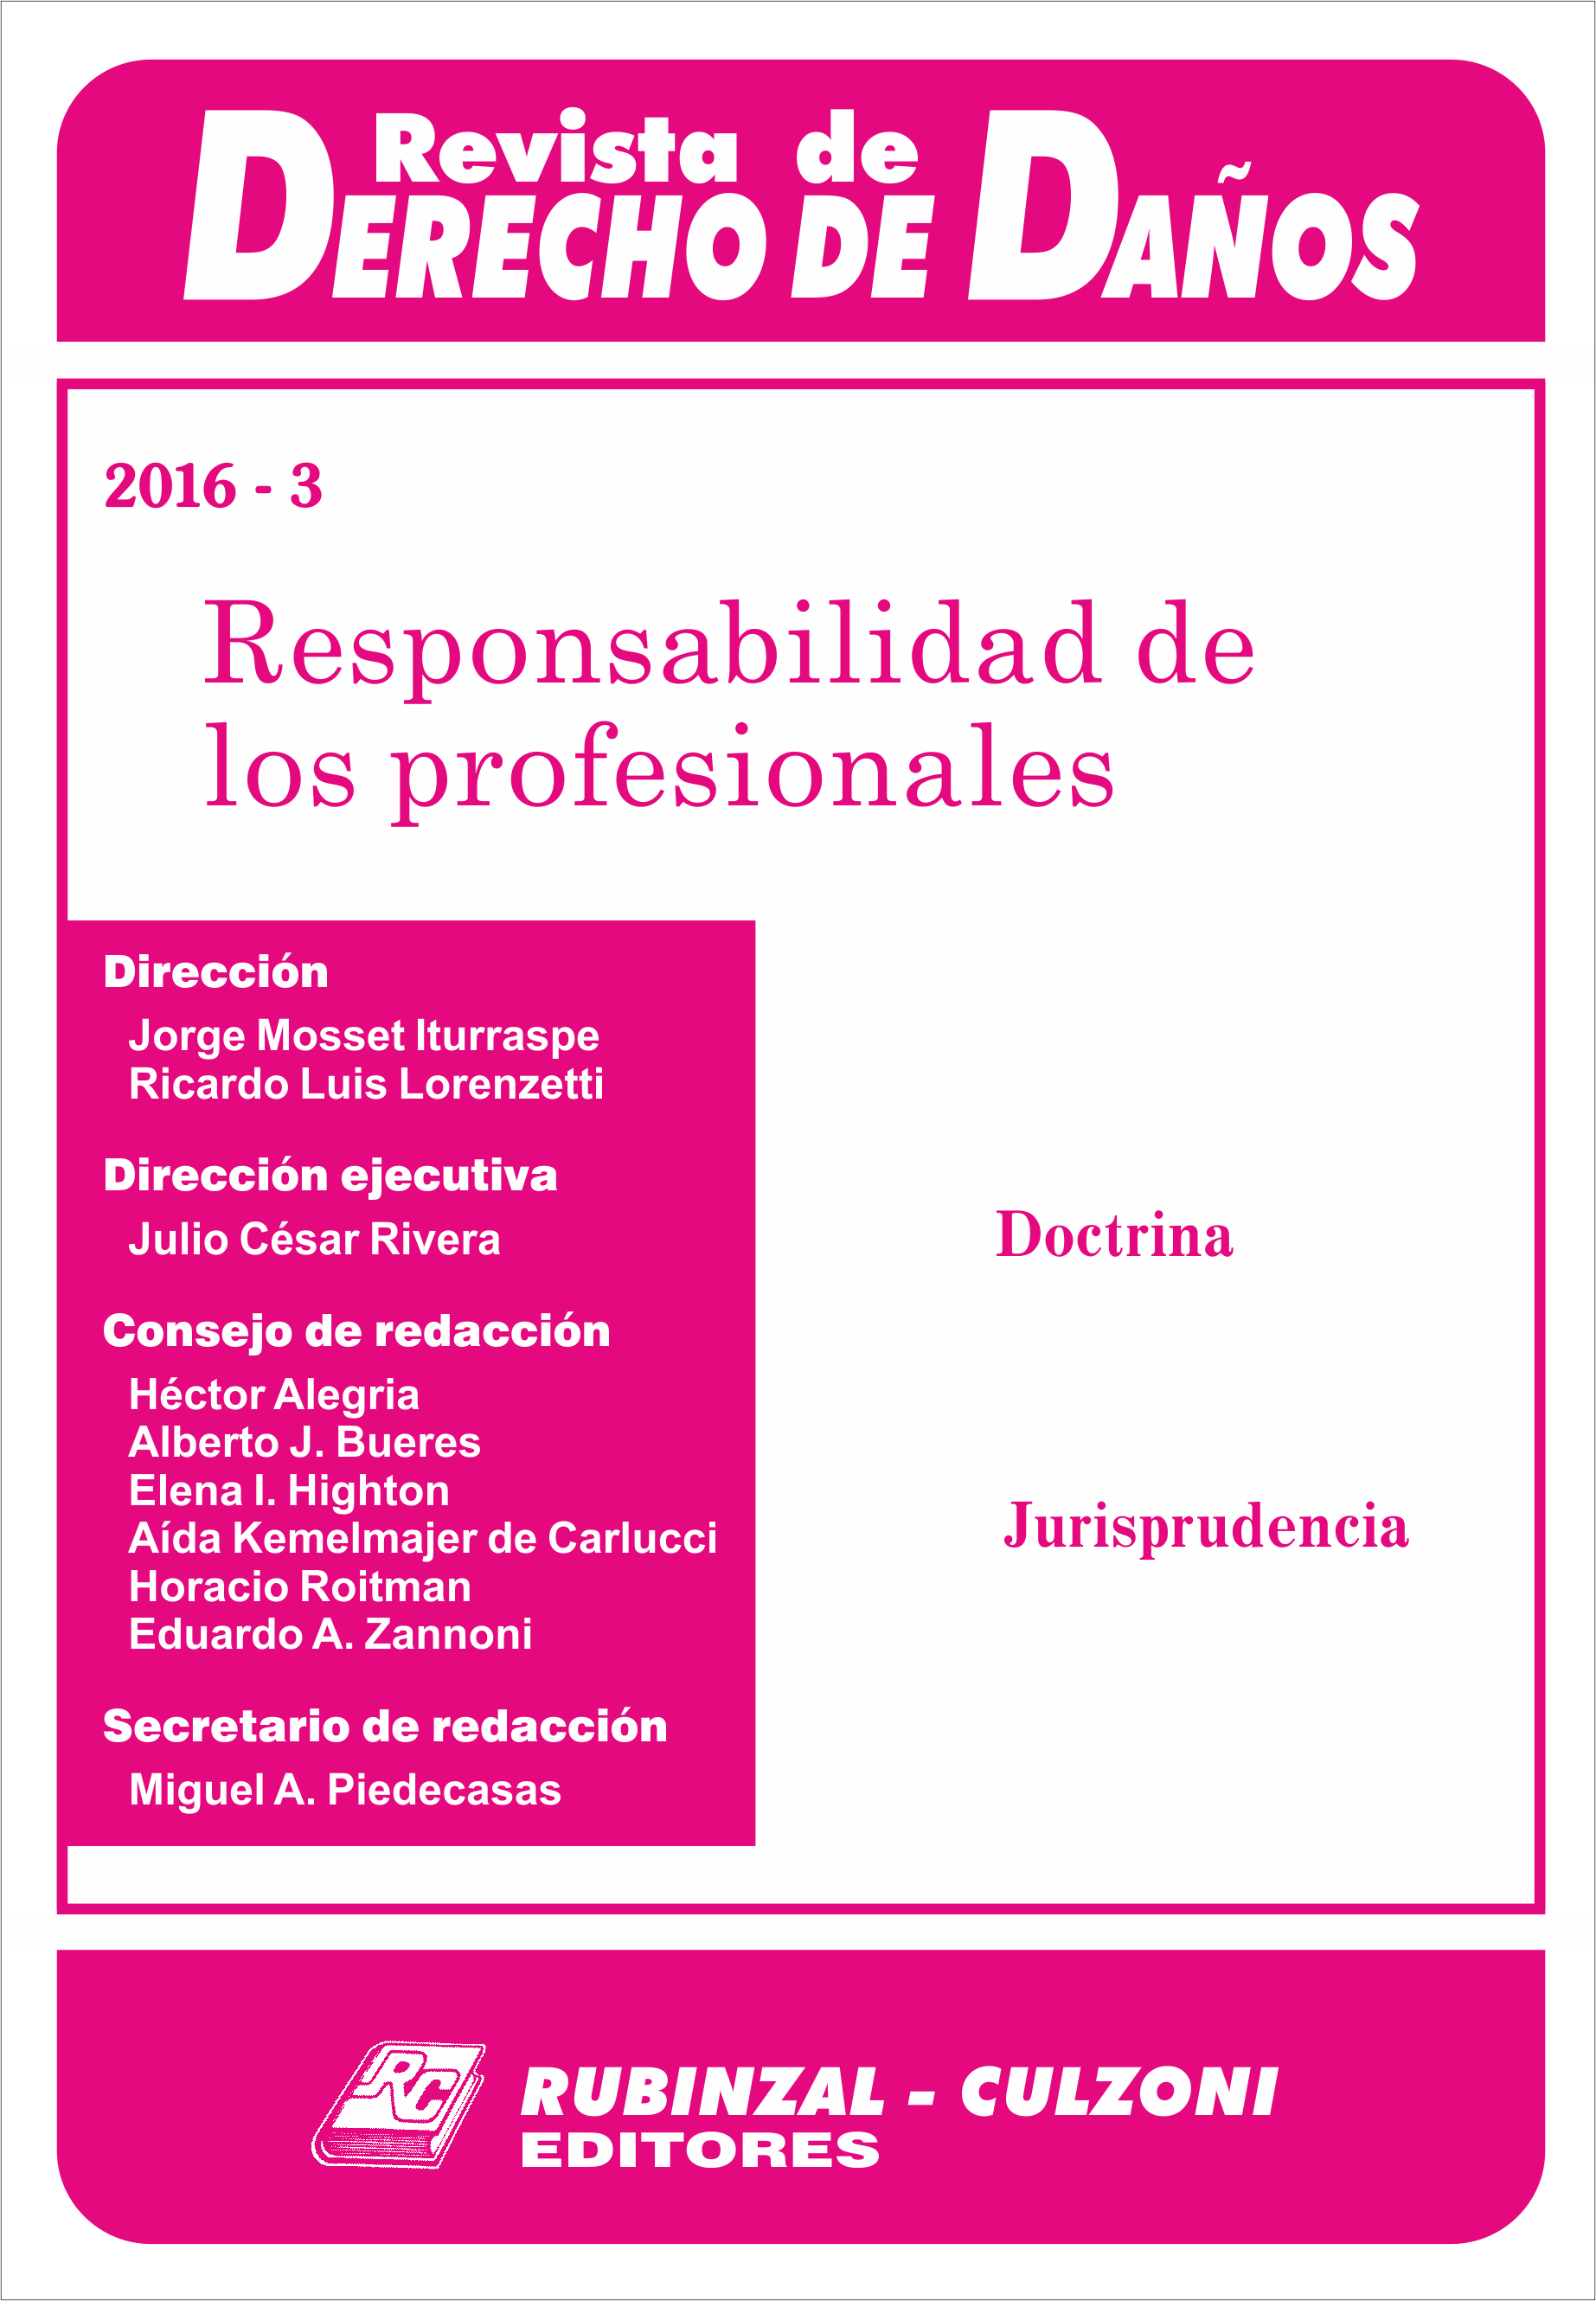 Revista de Derecho de Daños - Responsabilidad de los profesionales